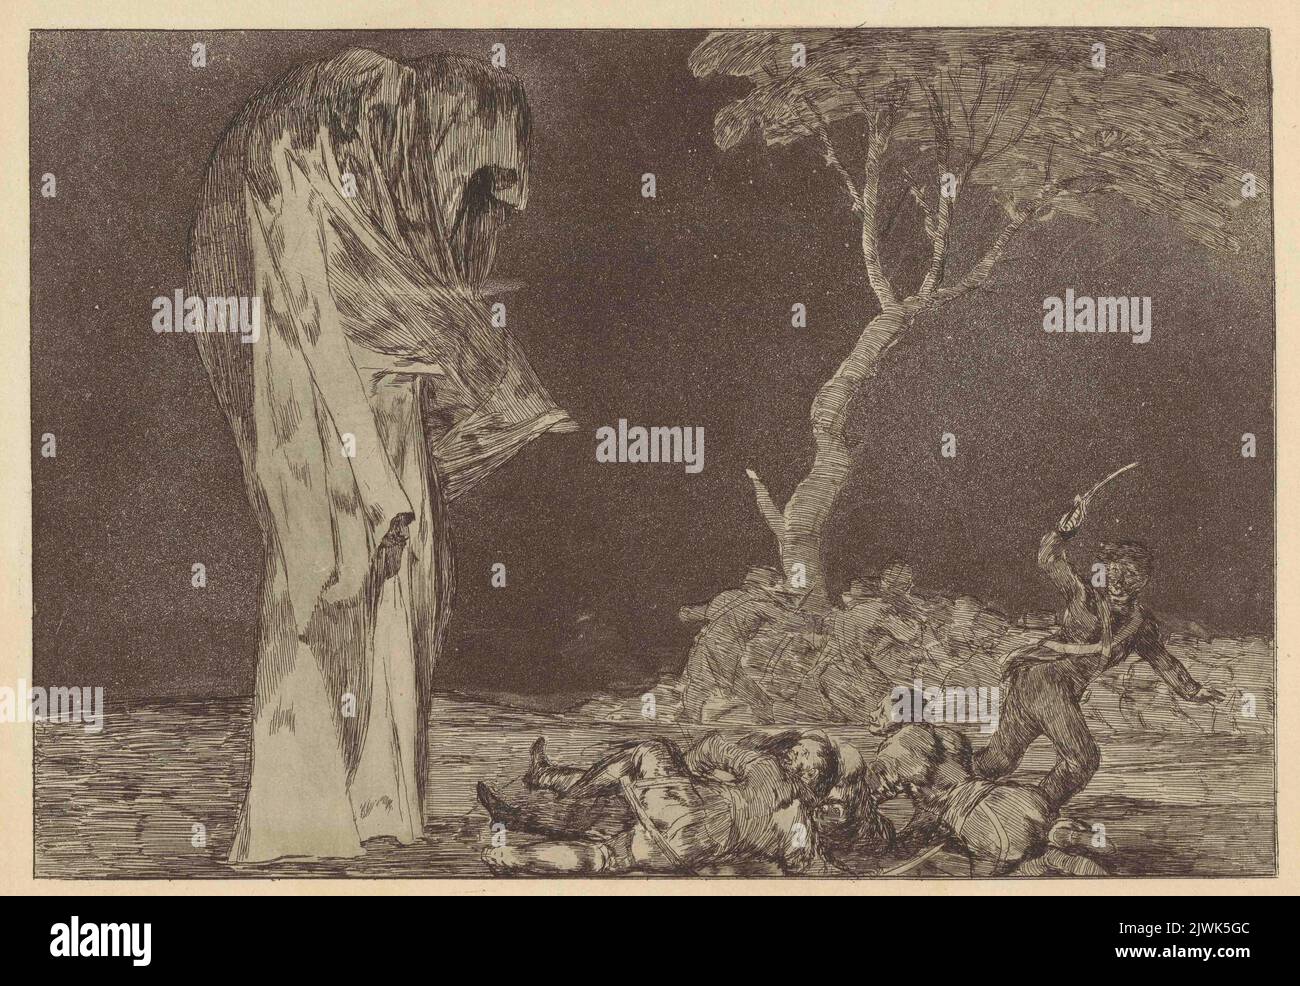 ZE strachu nie trać honoru. Szaleństwo strachu (Por Temor no Pierdan Honor. Disparate de miedo), rycina no 2 z cyklu Los Disparates / Los Proverbios. Goya, Francisco de (1746-1828), graphiste Banque D'Images